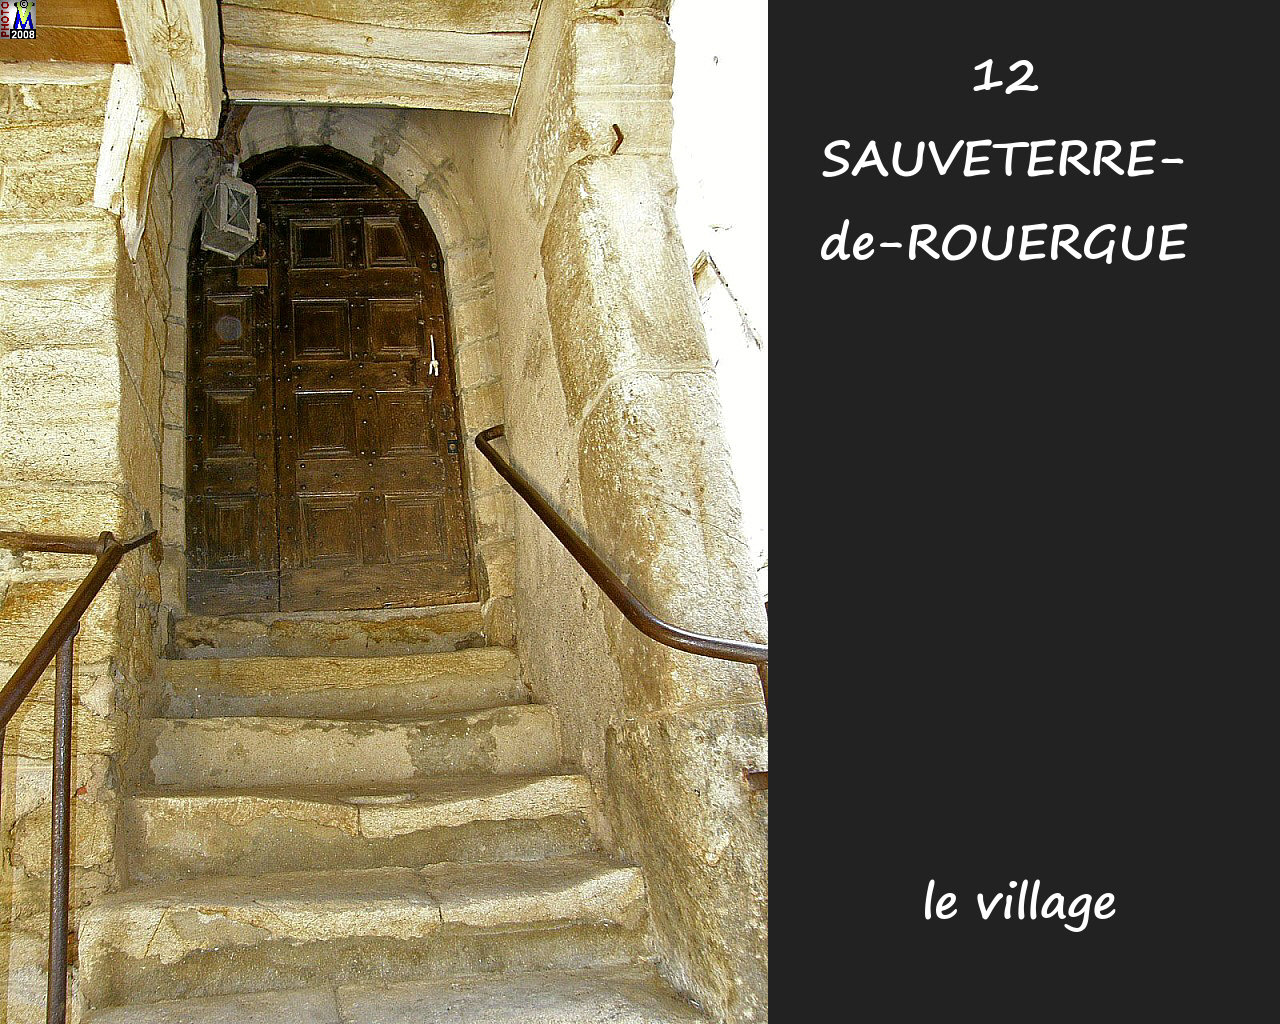 12SAUVETERRE-ROUERGUE_village_192.jpg